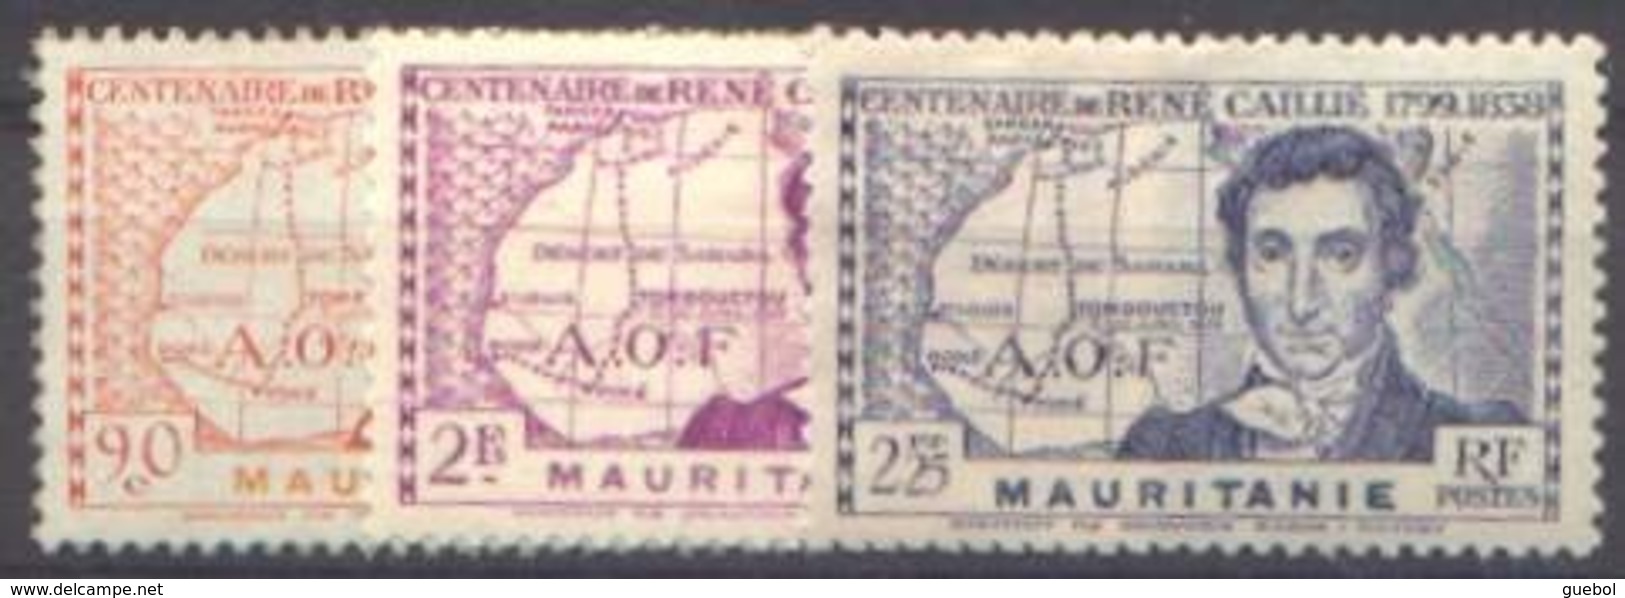 Détail De La Série Centenaire René Caillié ** Mauritanie N° 95 à 97 - 1939 Centenaire De René Caillé